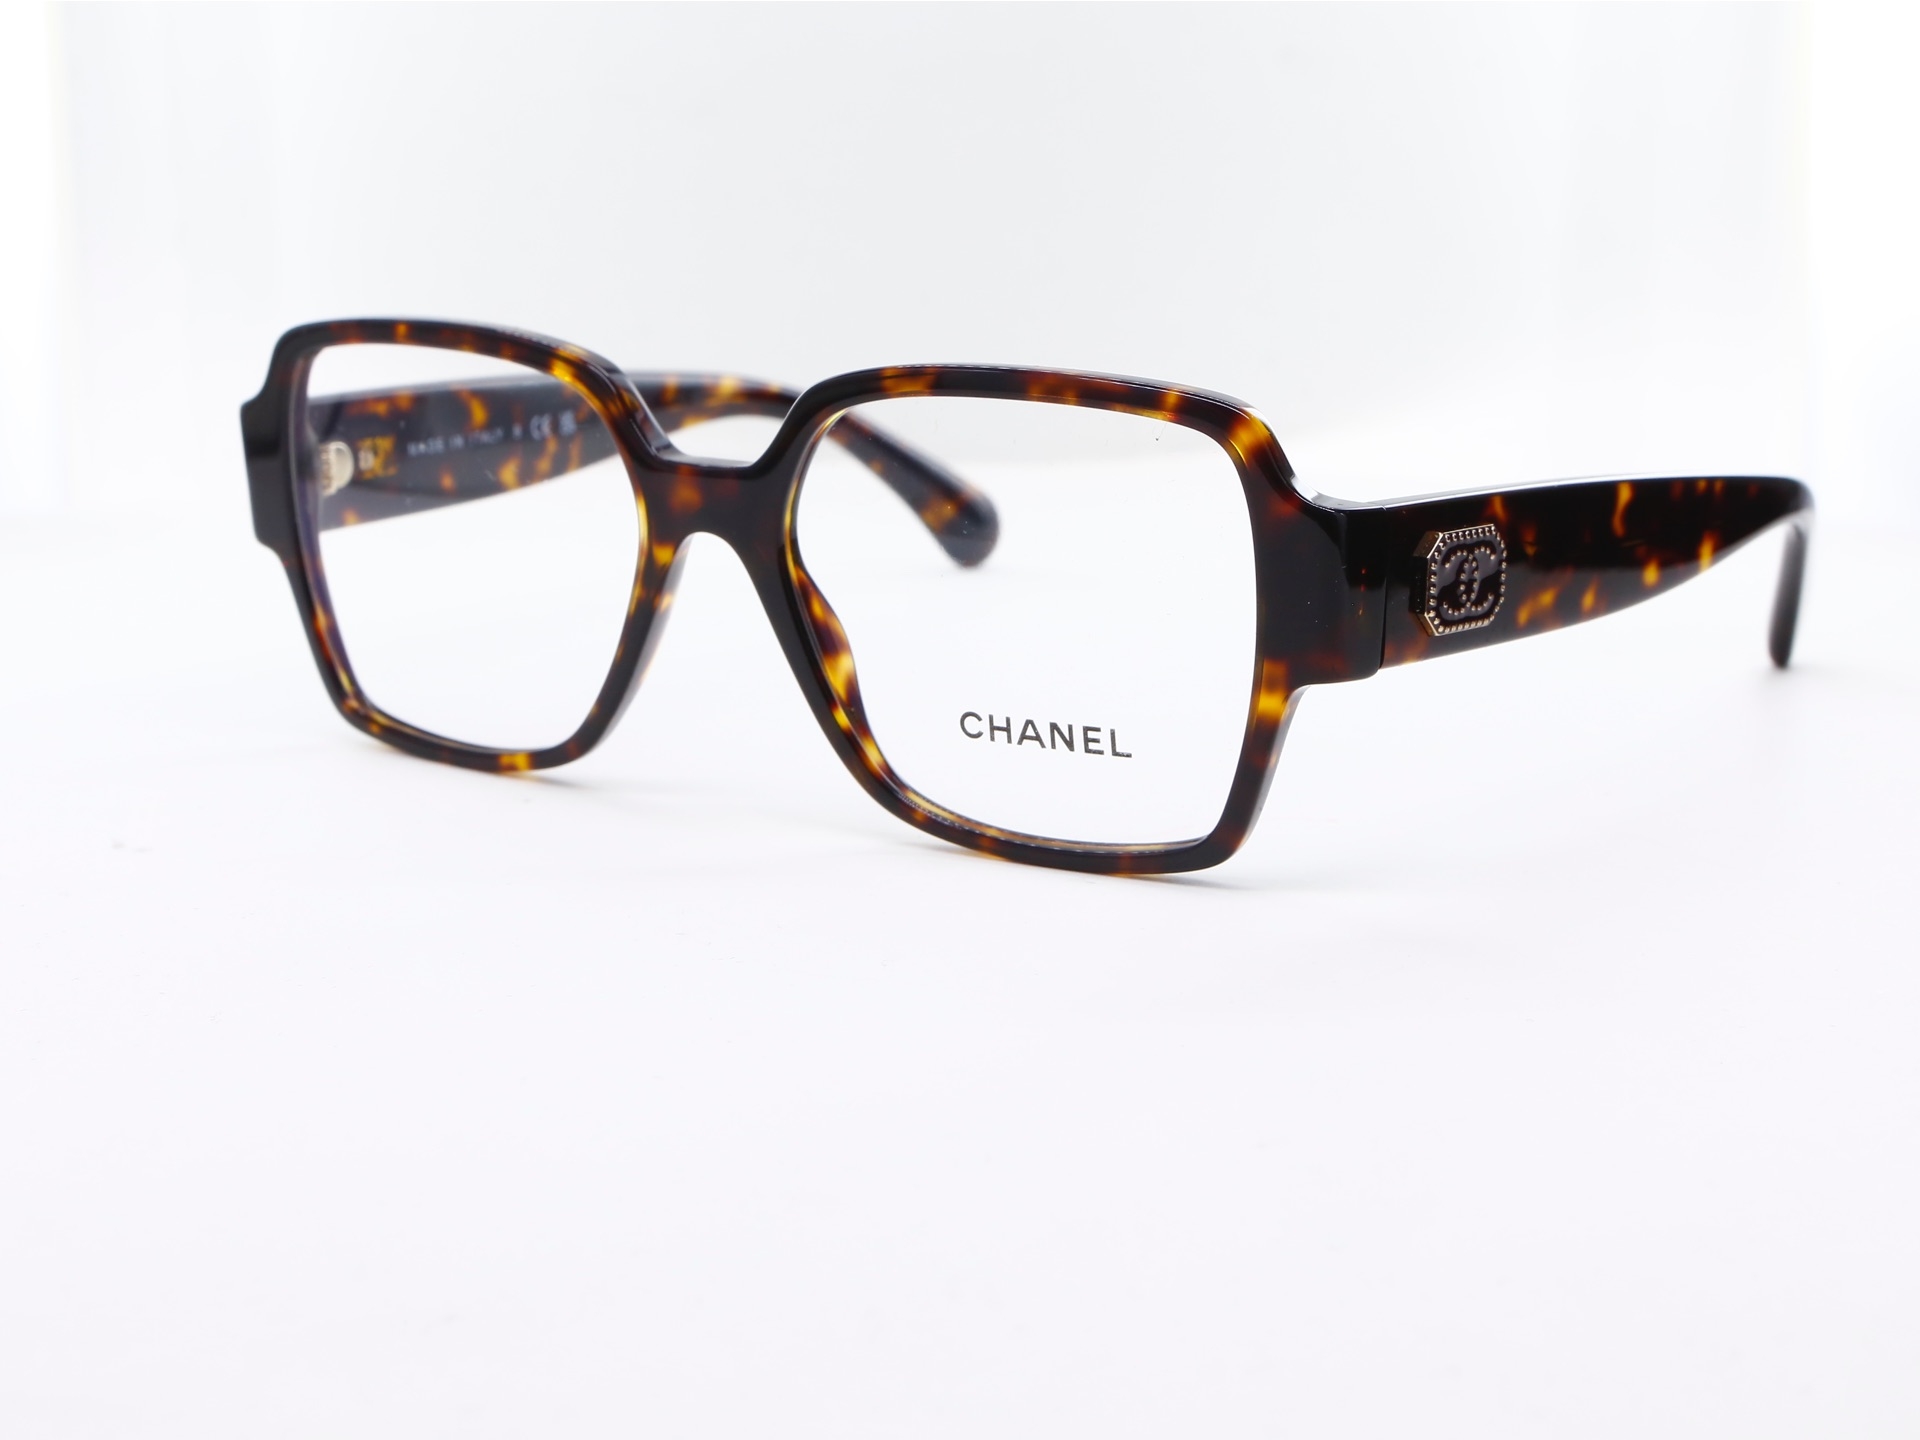 Chanel - ref: 87817